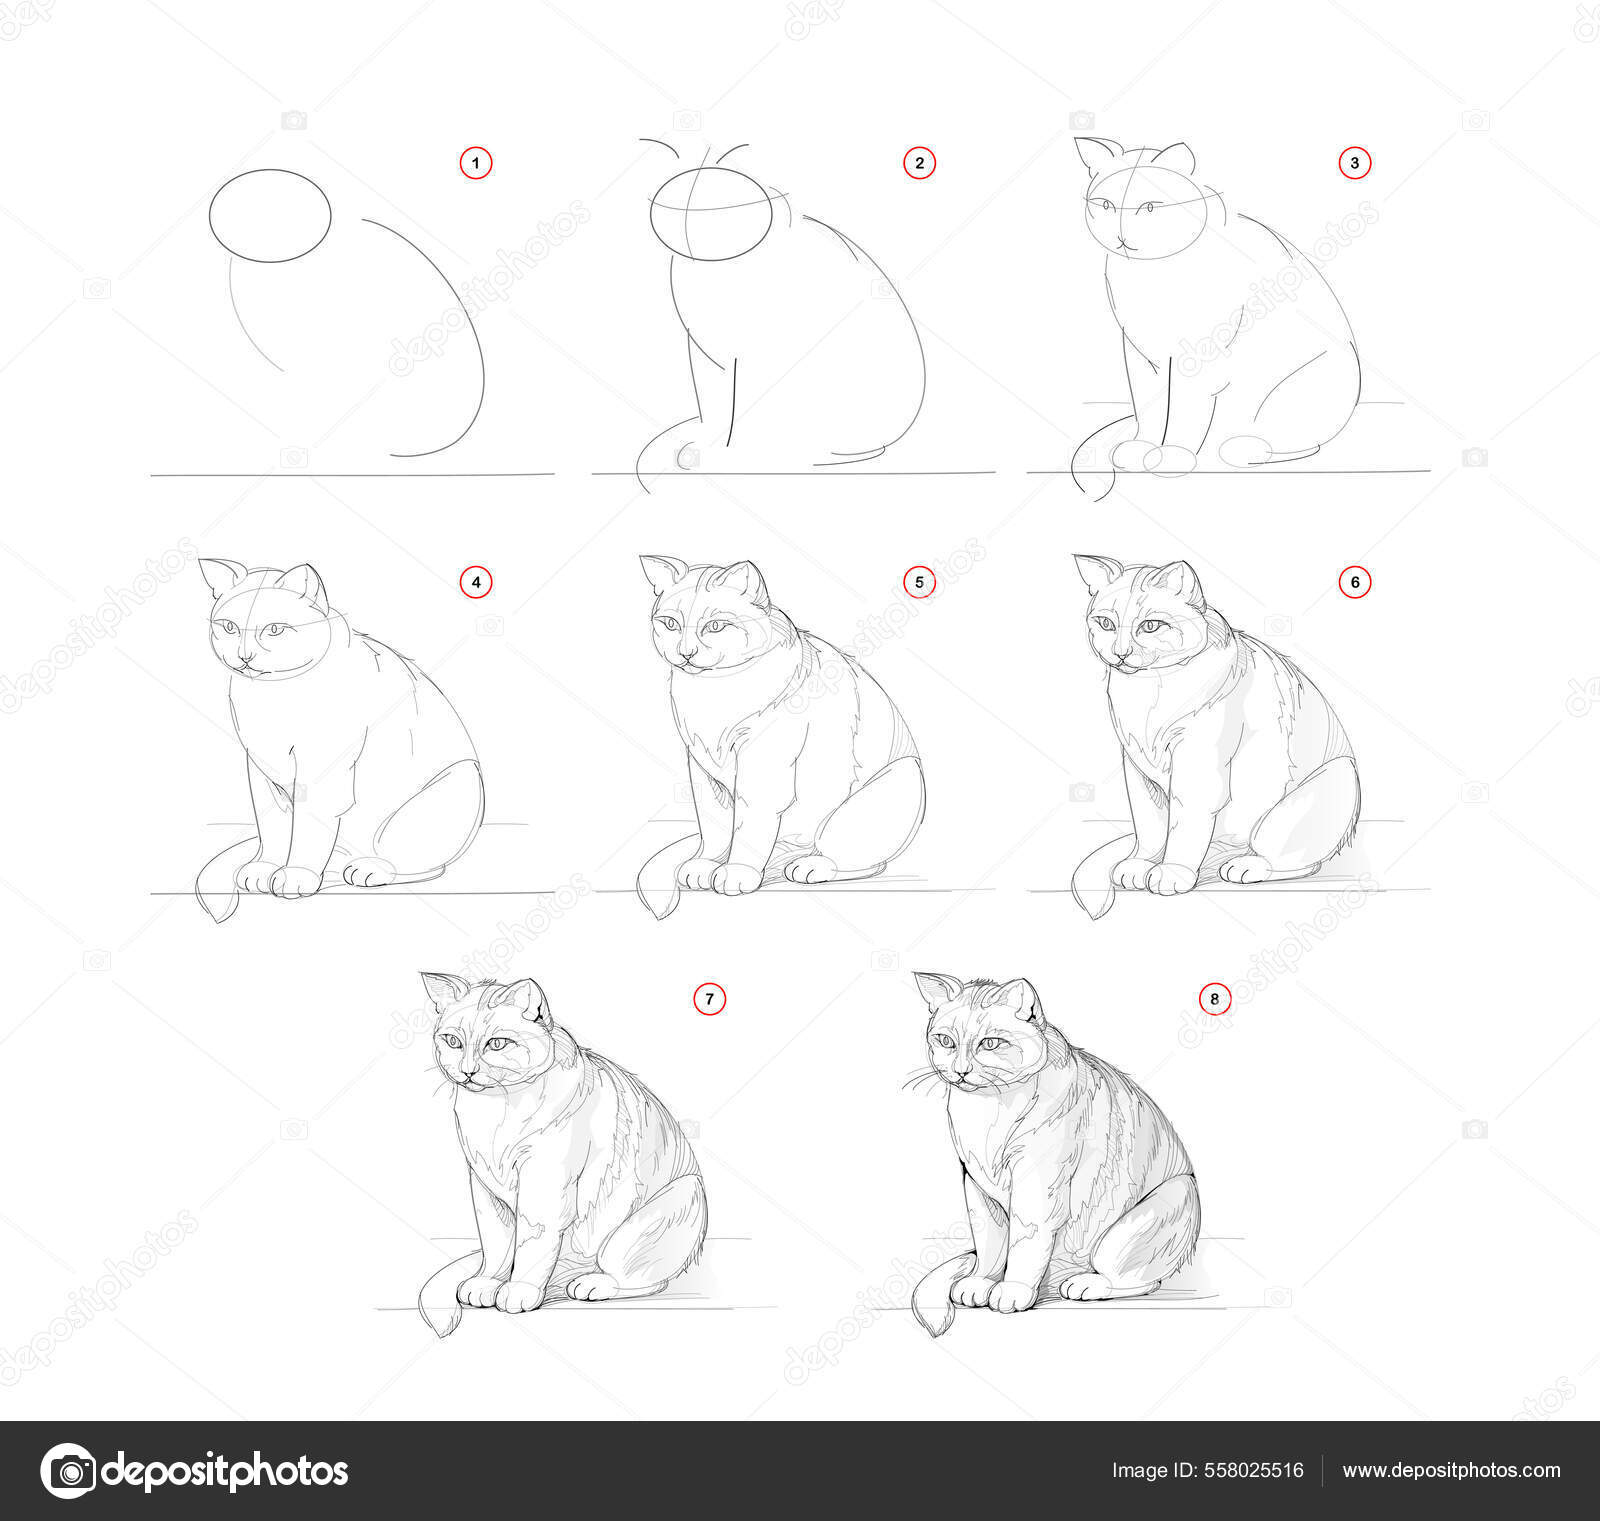 Tutorial: Como desenhar um gato fácil passo a passo